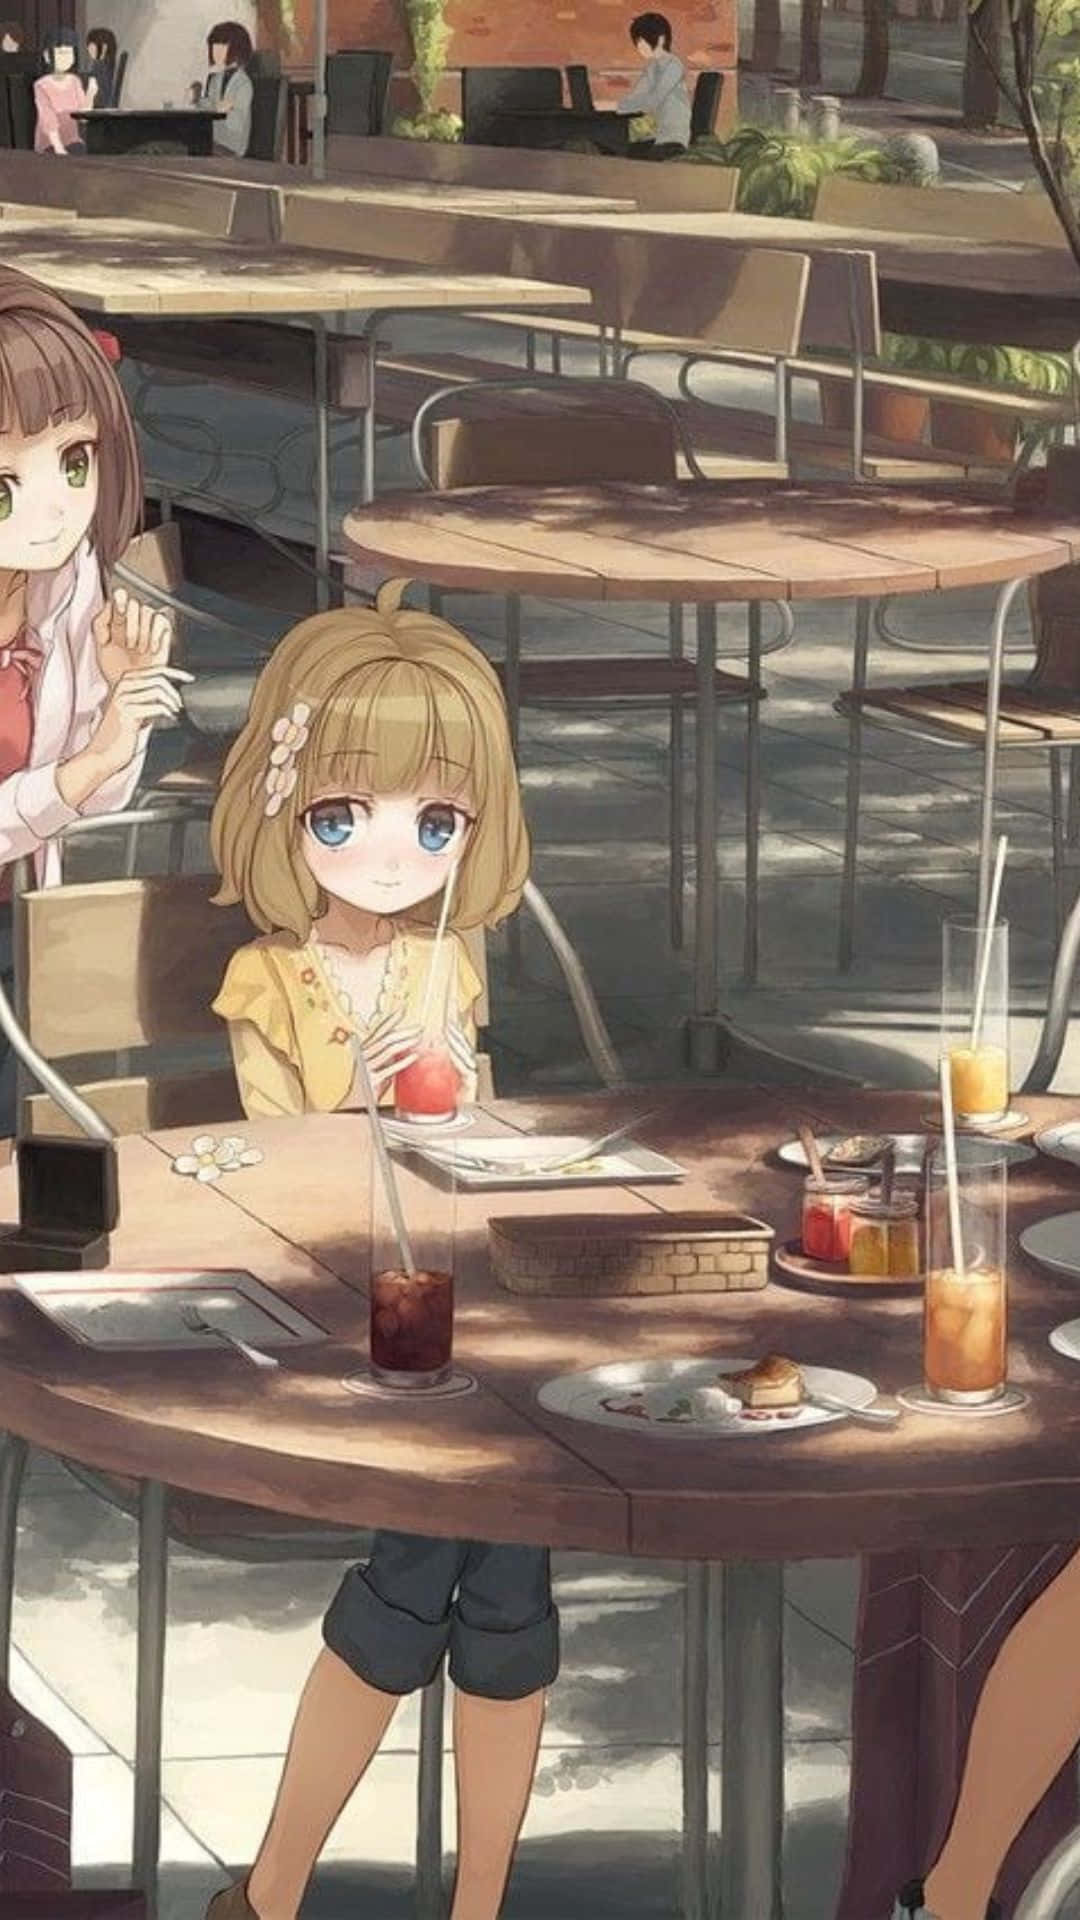 Anime Cafe Background 1080 X 1920 Background